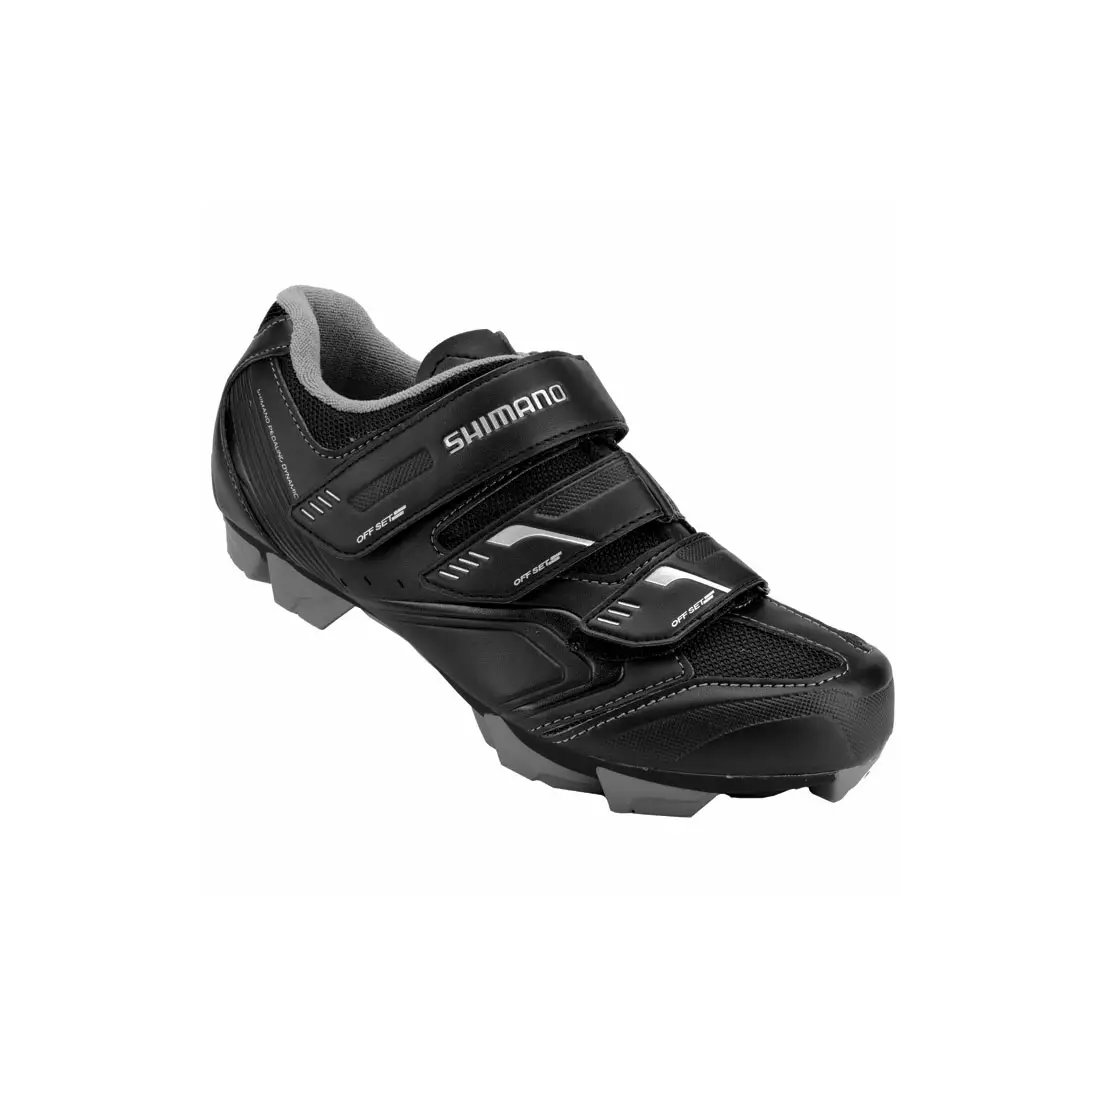 SHIMANO SH-WM52 - dámska cyklistická obuv, farba: čierna